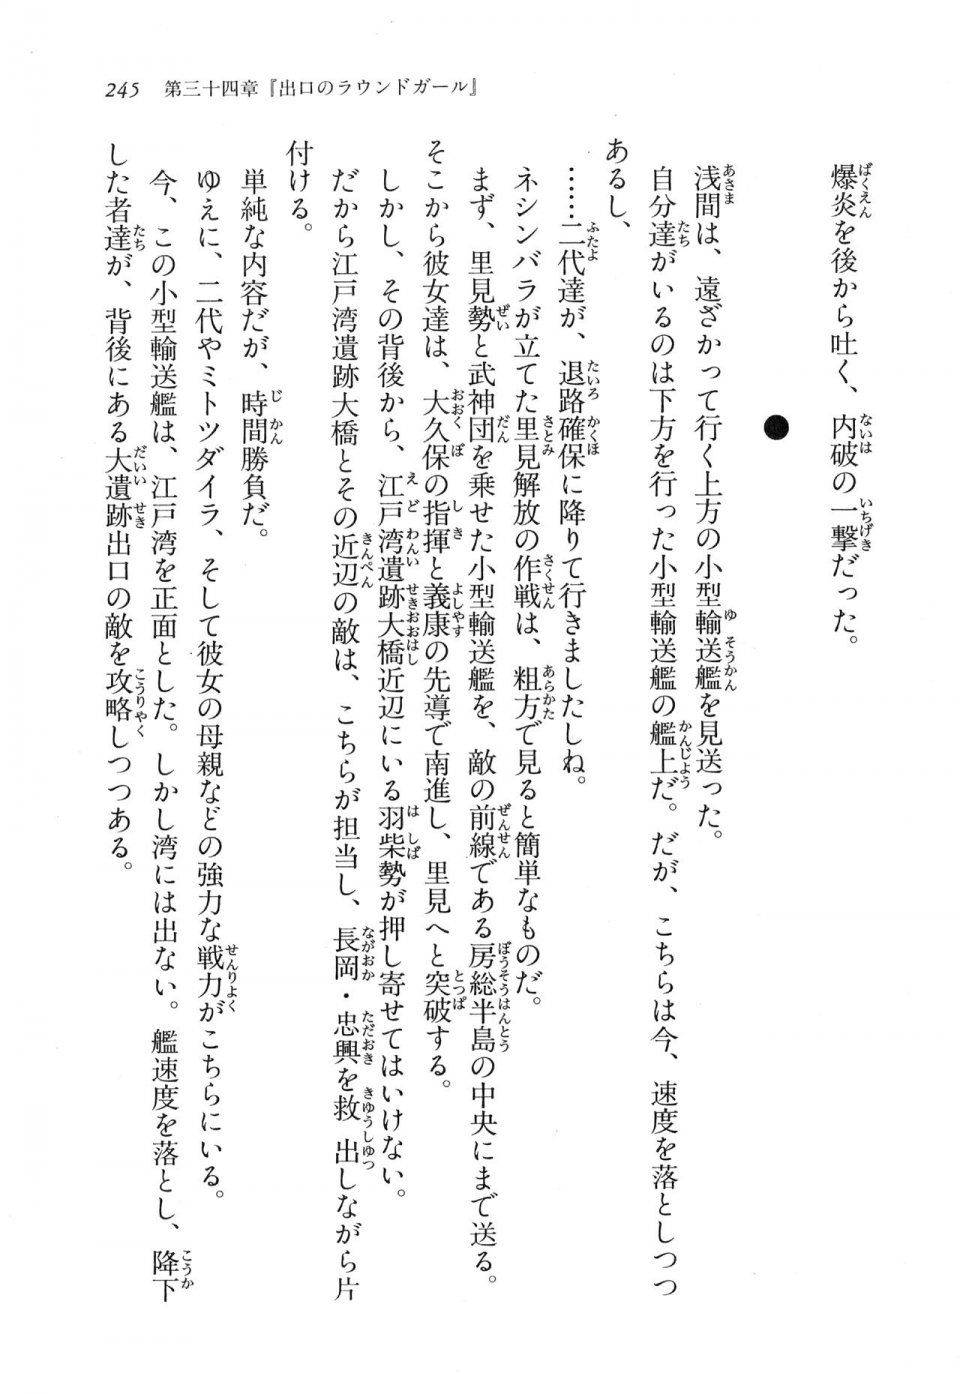 Kyoukai Senjou no Horizon LN Vol 17(7B) - Photo #245